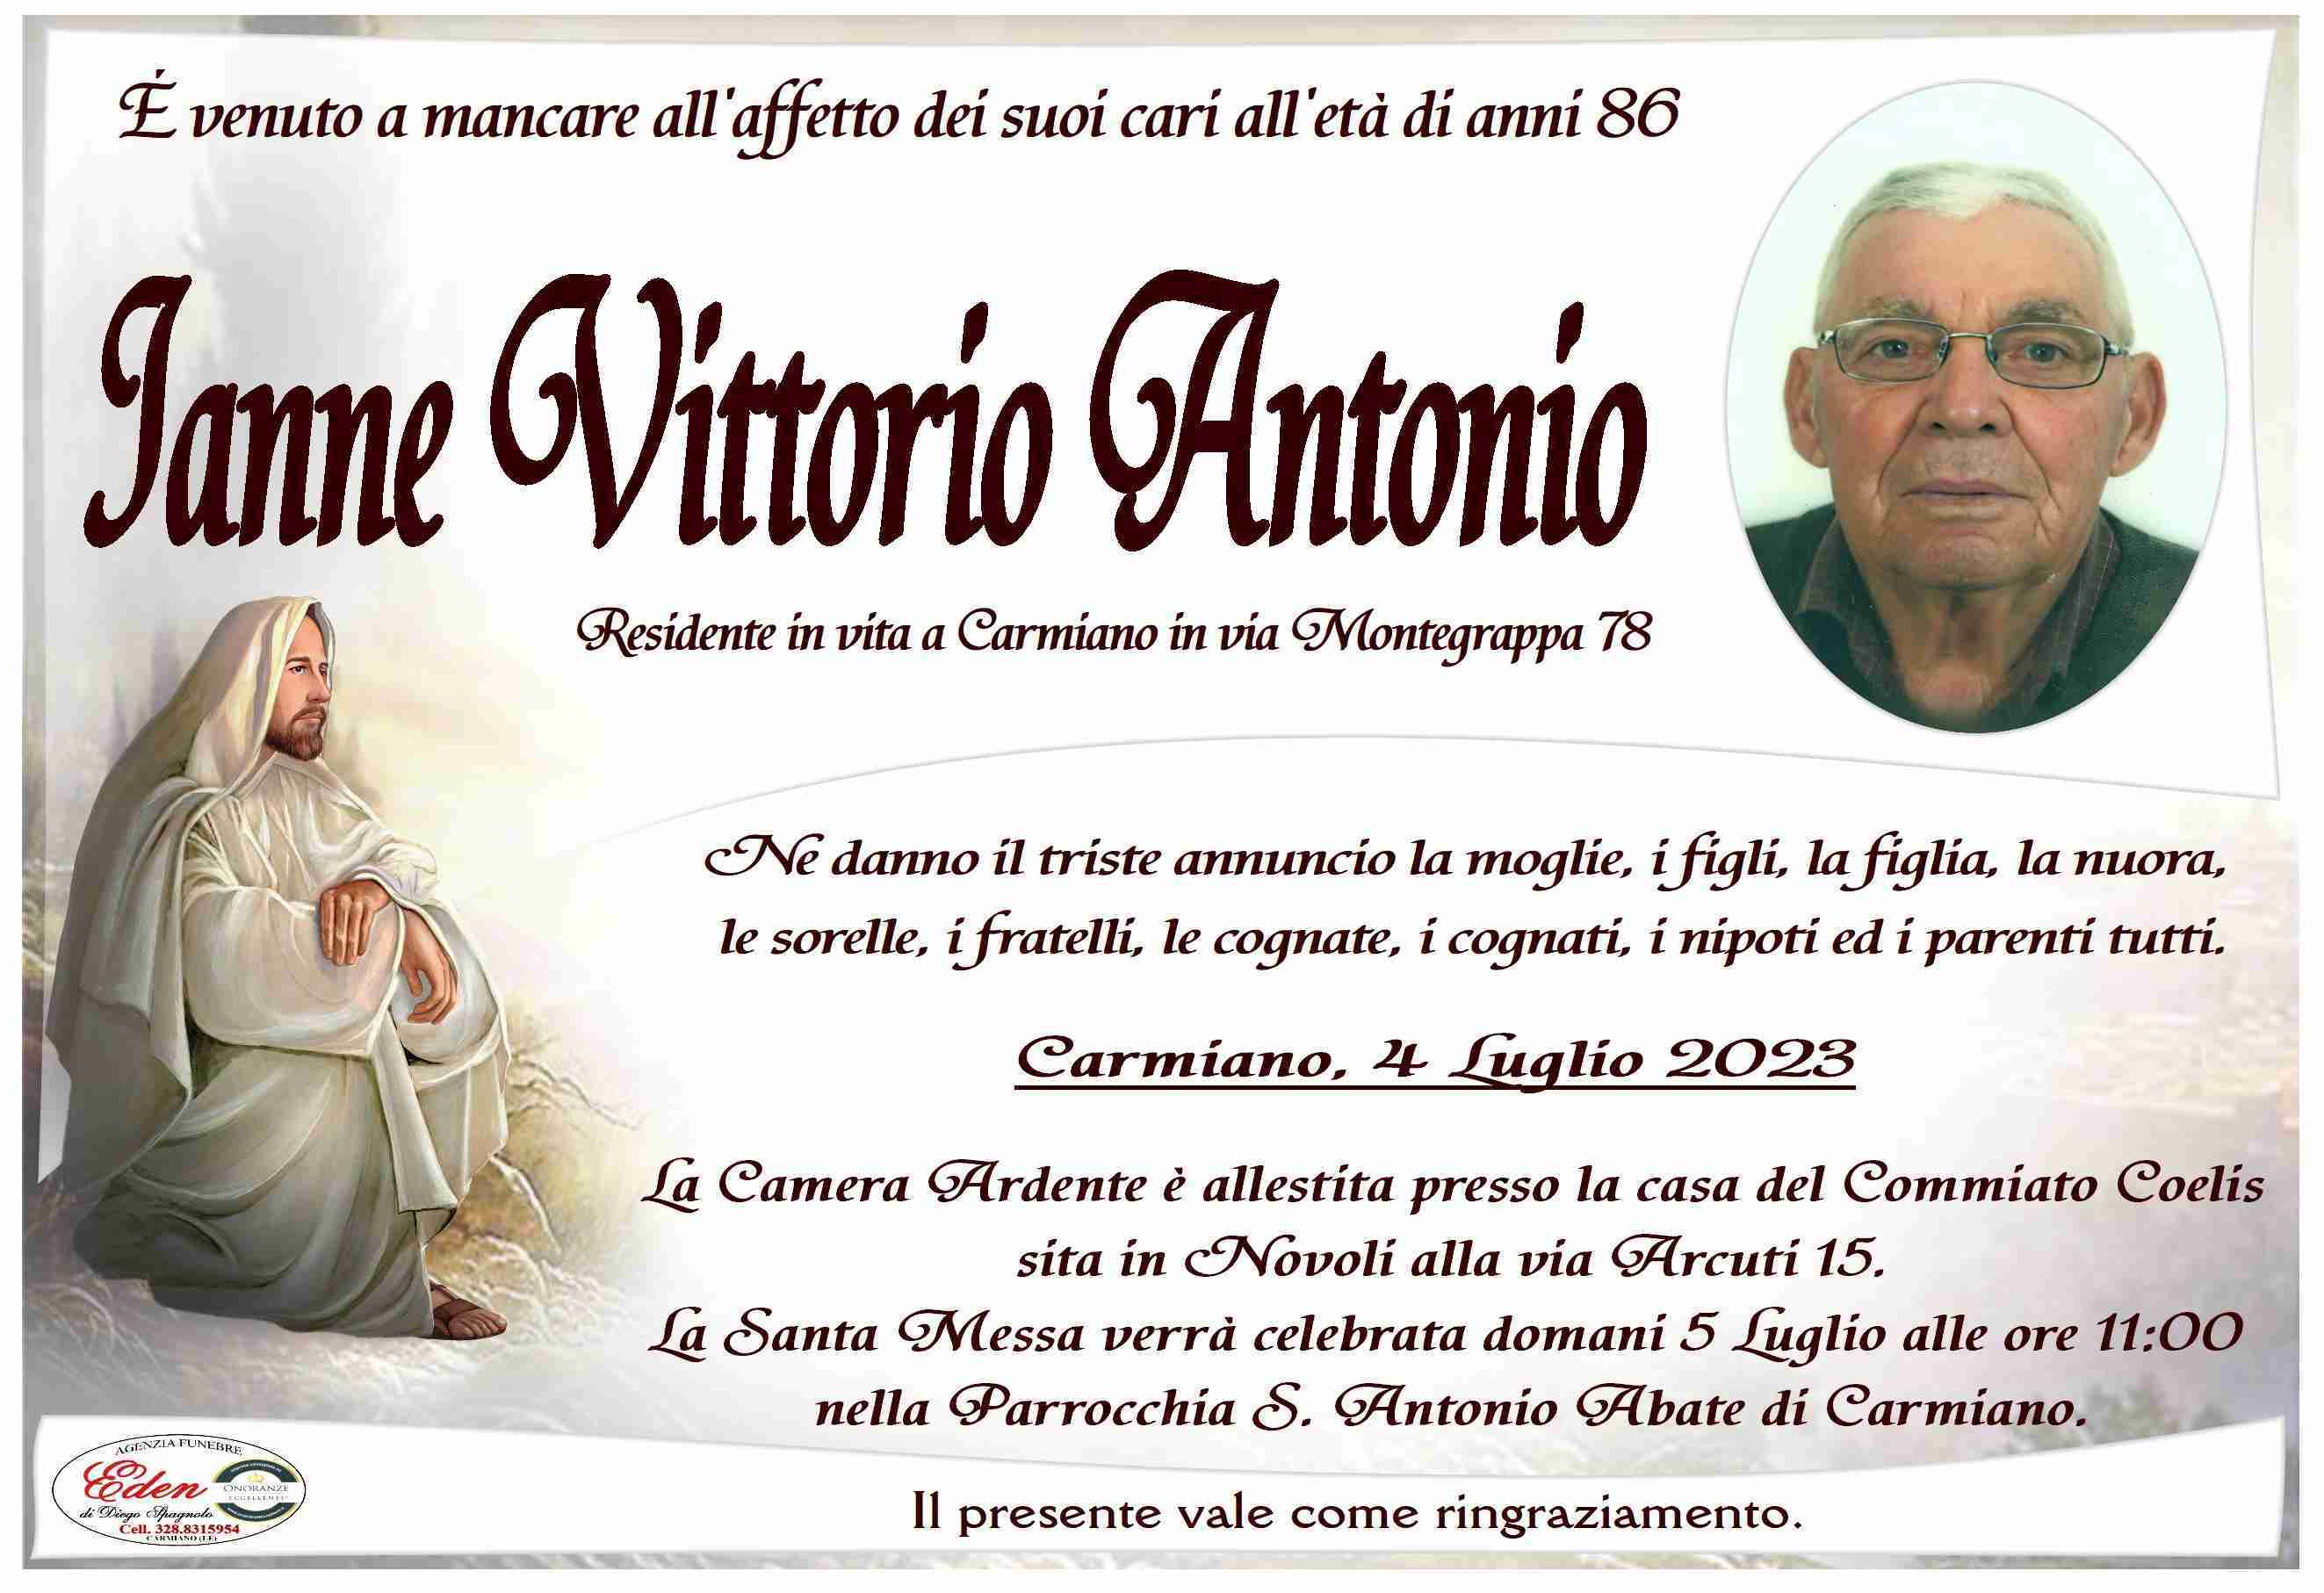 Vittorio Antonio Ianne